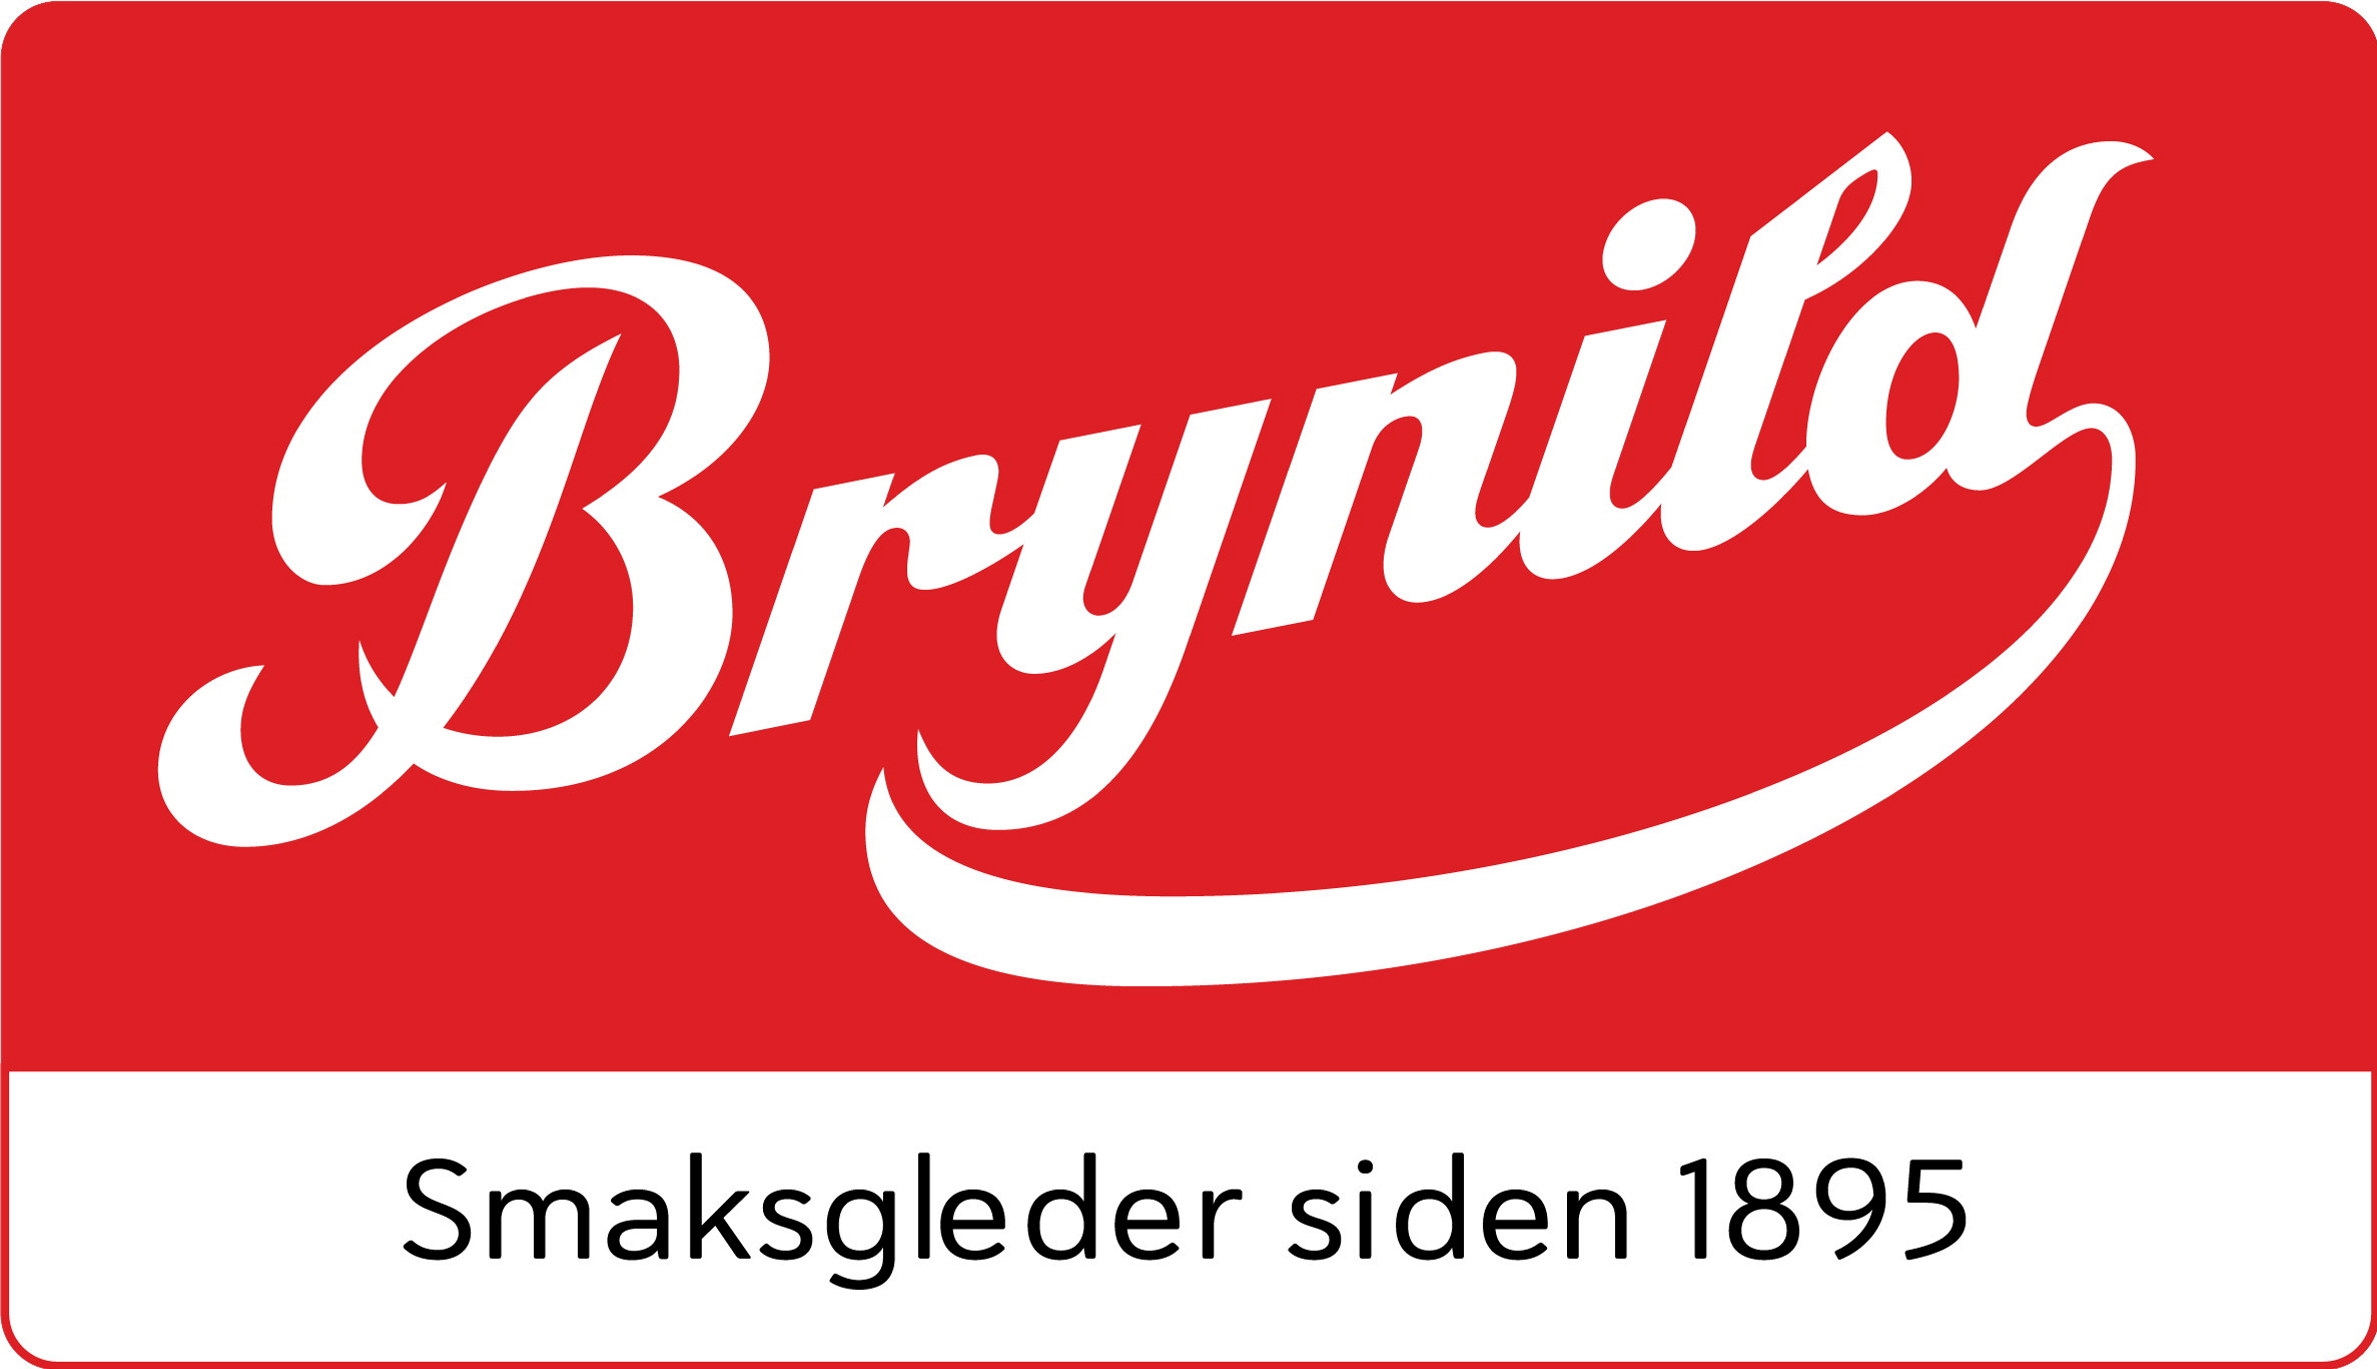 Brynilds logo